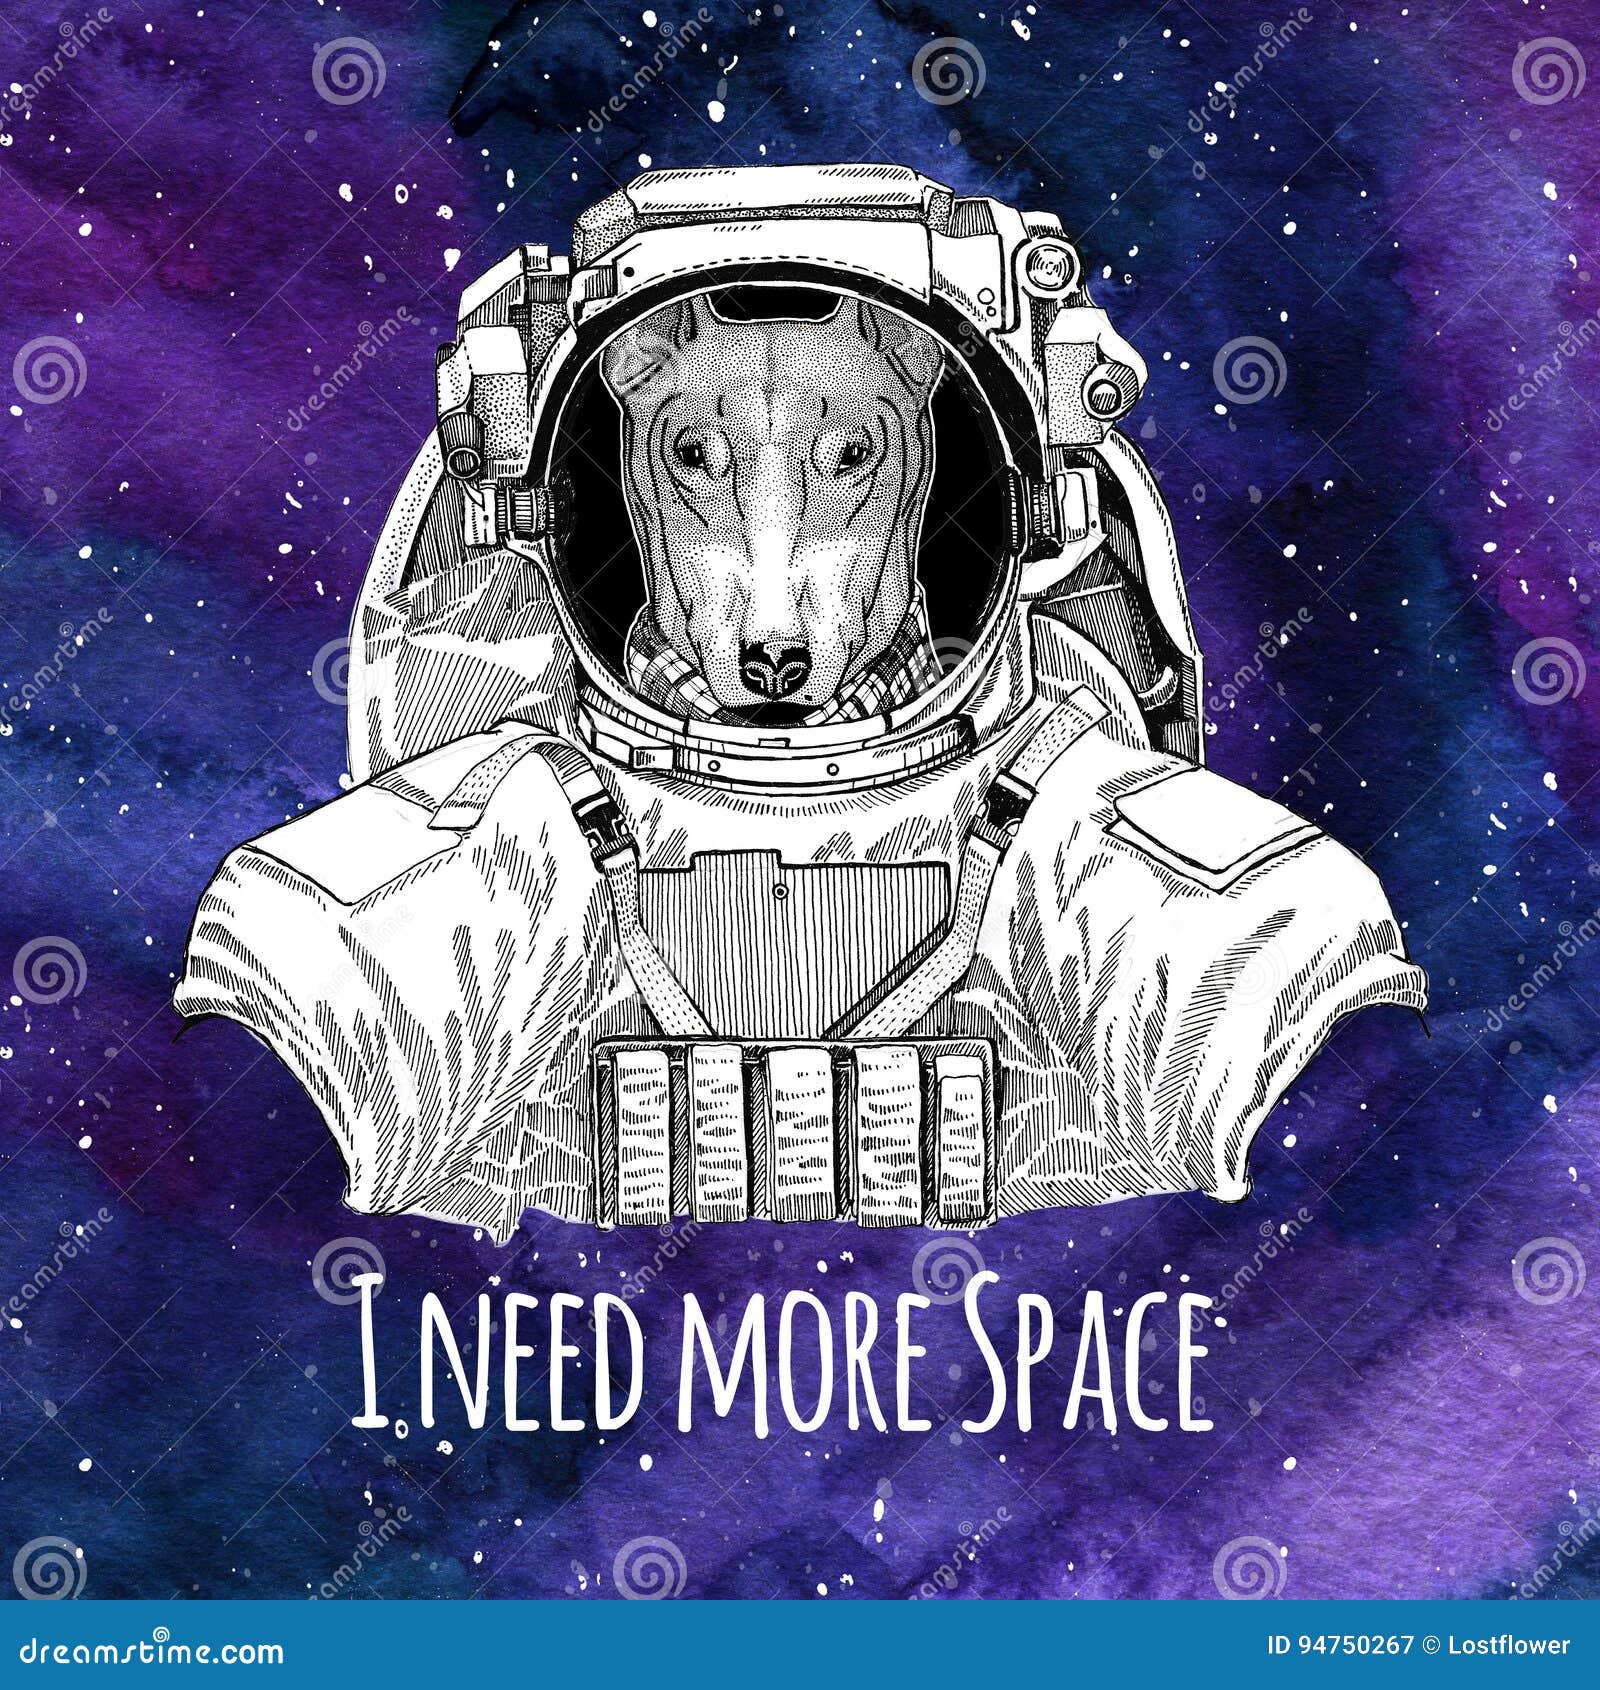 Hãy cùng chiêm ngưỡng hình ảnh đồng loại phi hành gia đáng yêu nhất trong vũ trụ! Chú chó phi hành gia sẽ khiến bạn thích thú và tràn đầy cảm hứng khám phá không gian bao la.